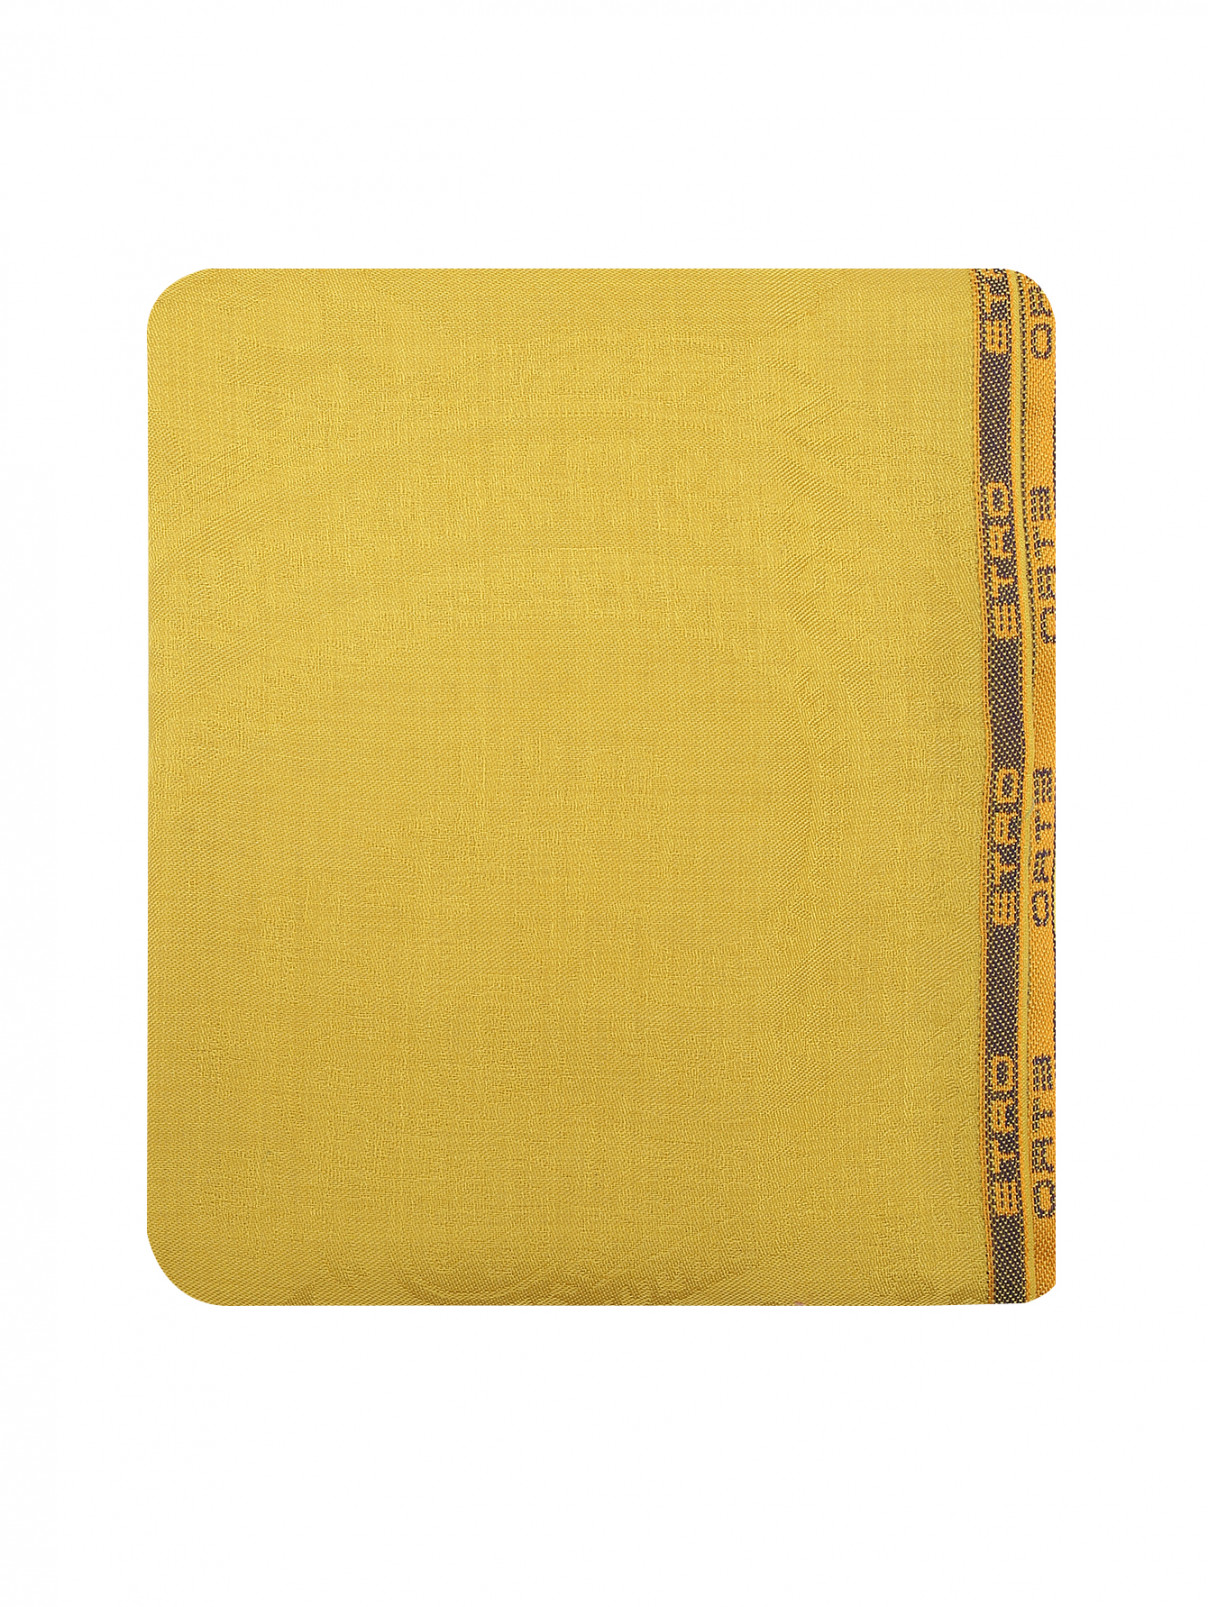 Шарф из кашемира шелка и шерсти Etro  –  Общий вид  – Цвет:  Желтый